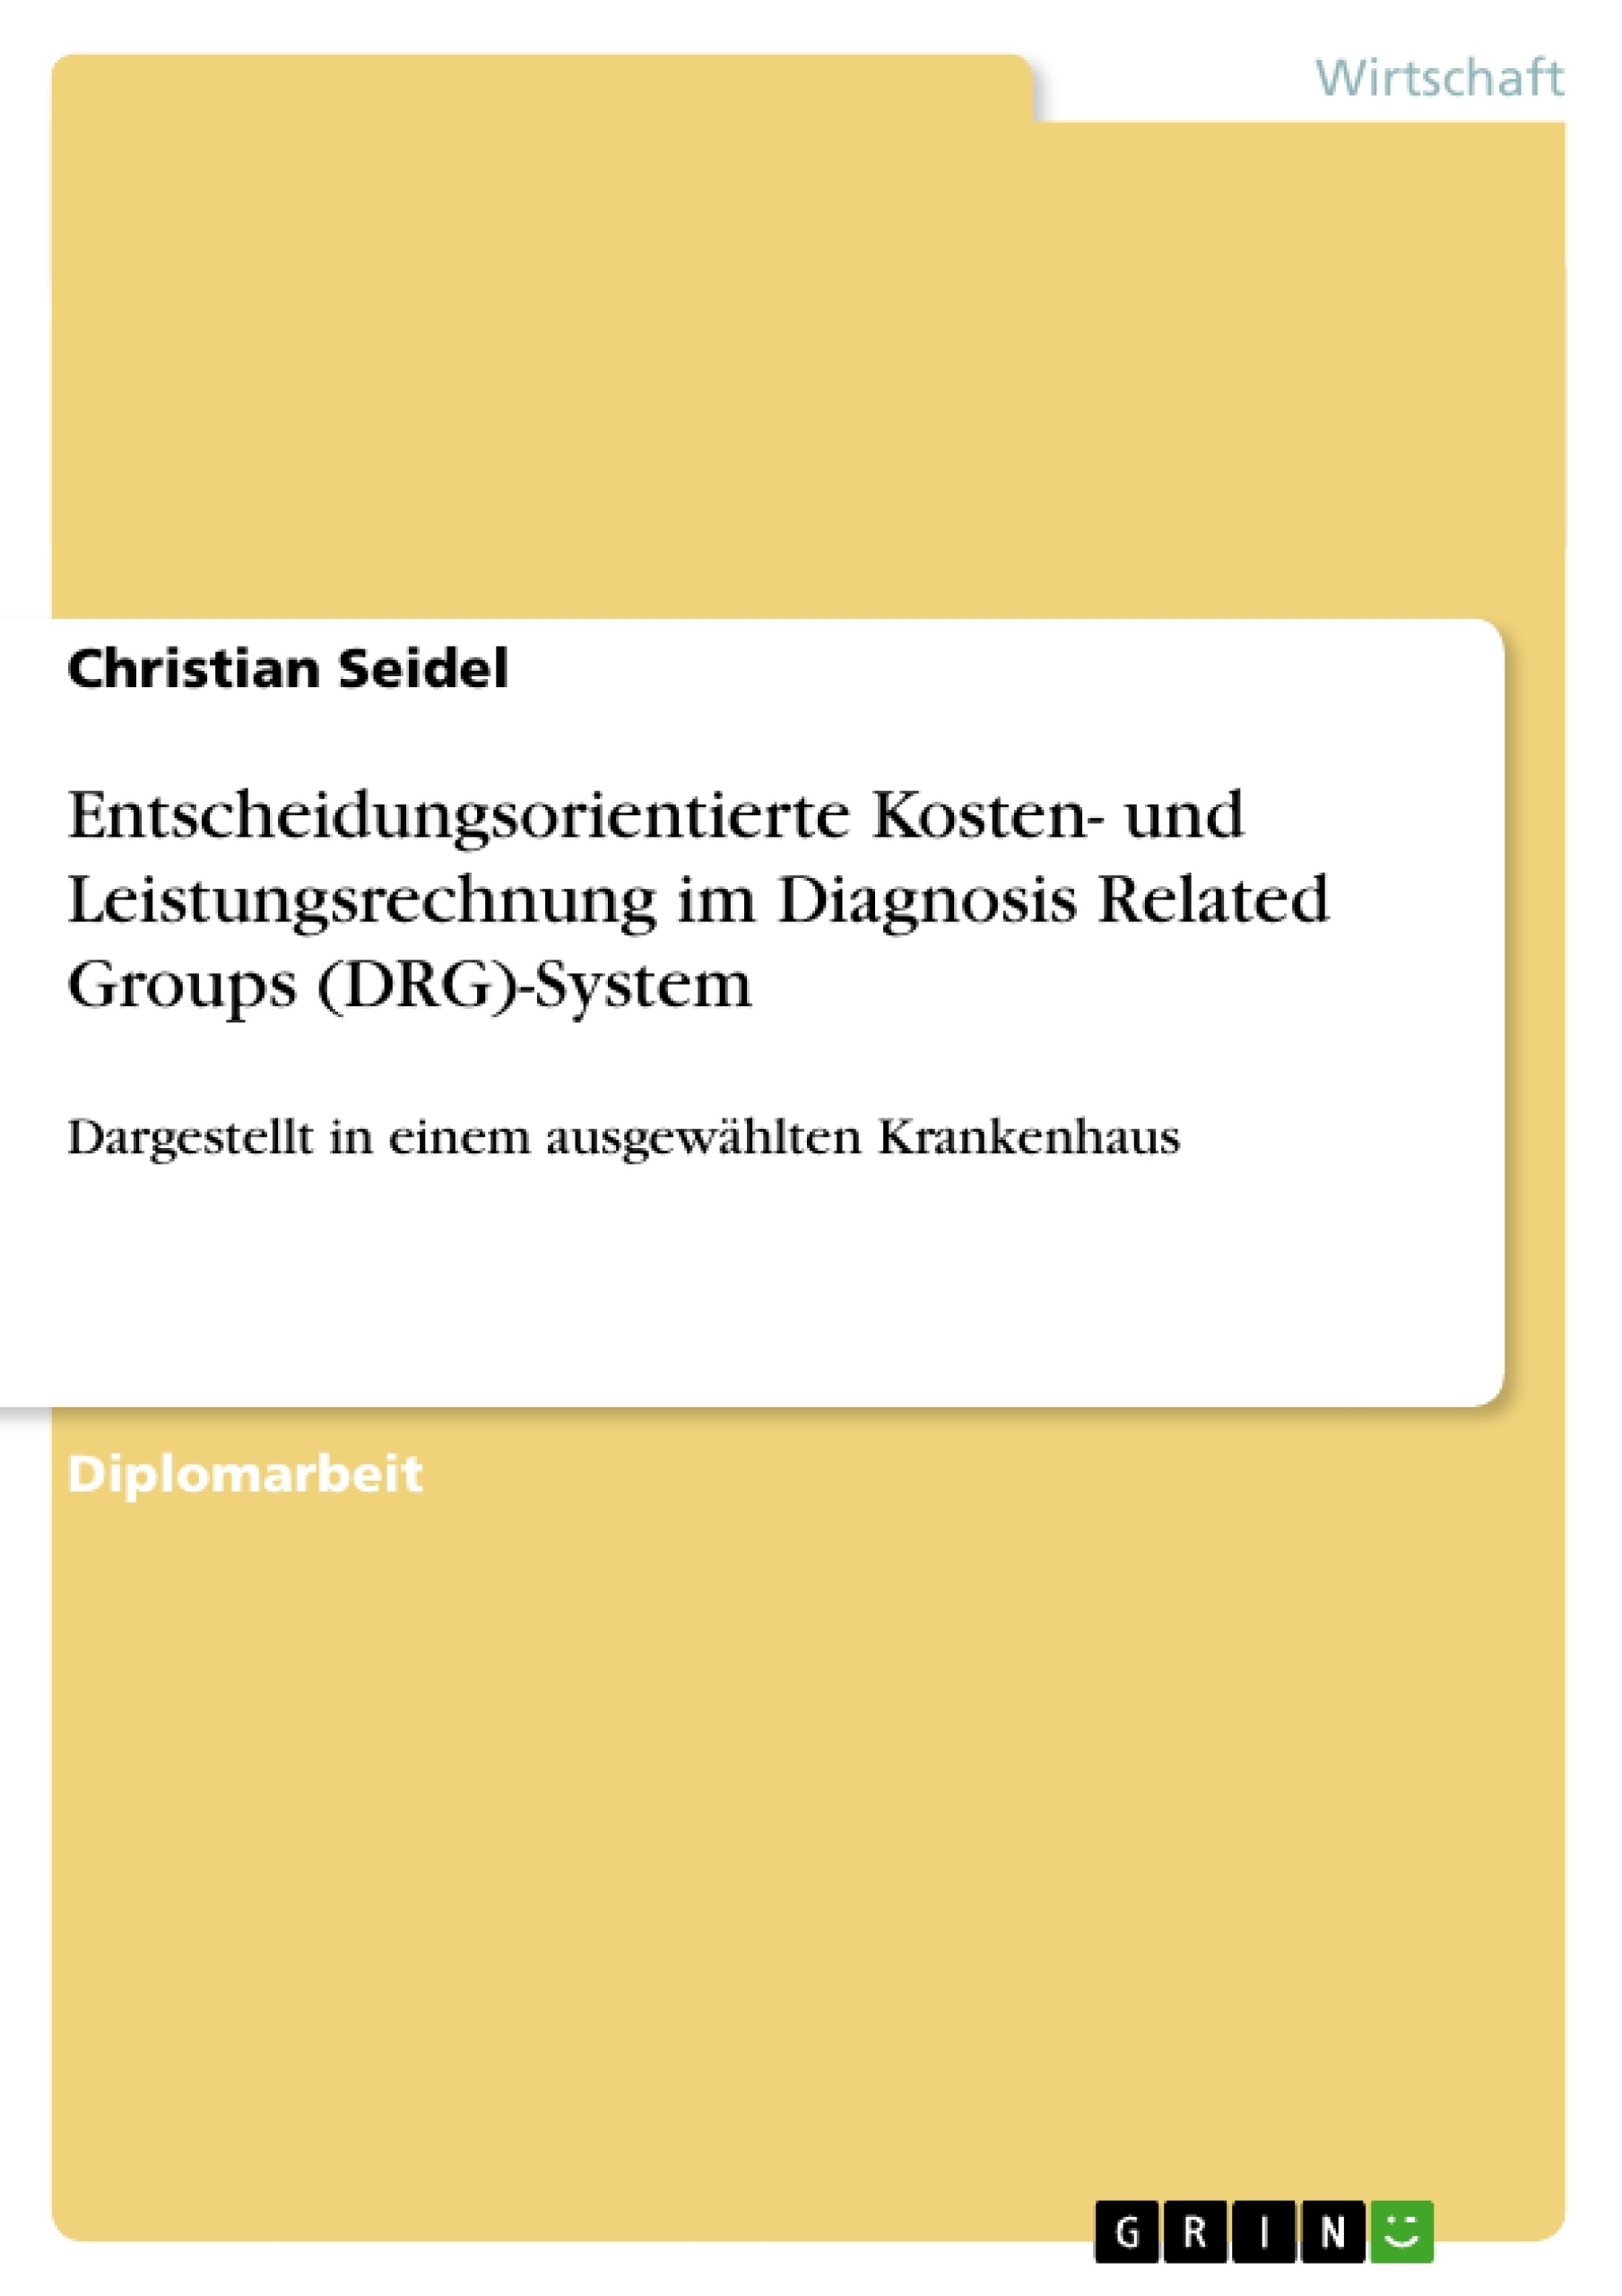 Title: Entscheidungsorientierte Kosten- und Leistungsrechnung im Diagnosis Related Groups (DRG)-System